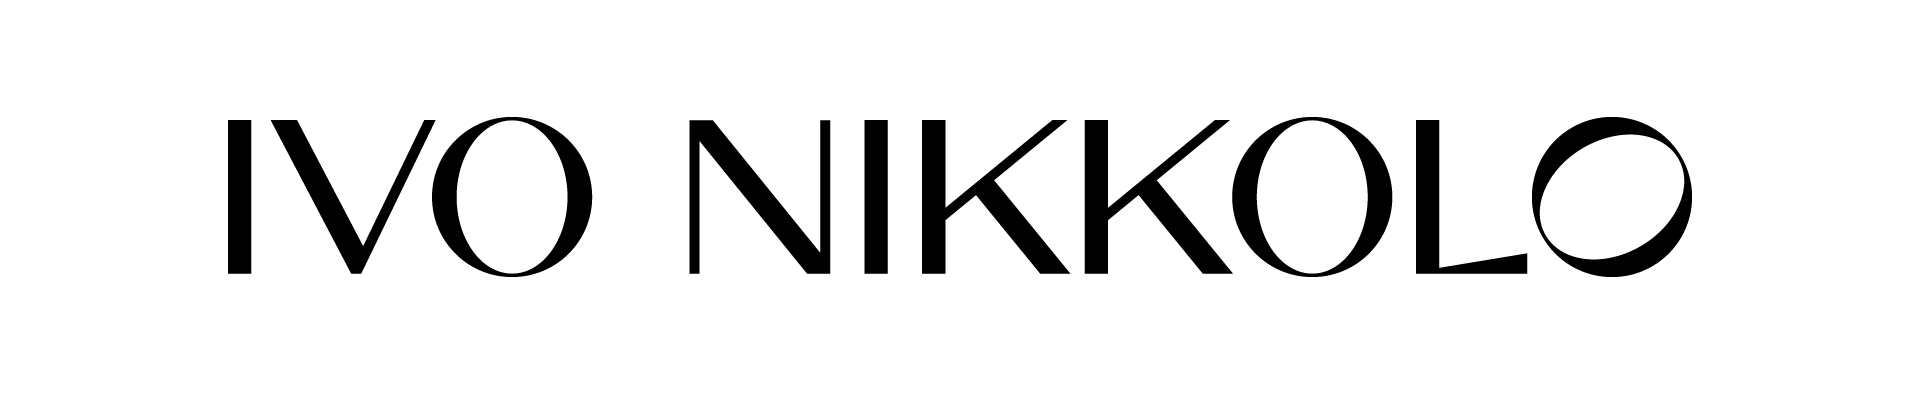 partners logos for 3 landingseeplivonikkolo logo black